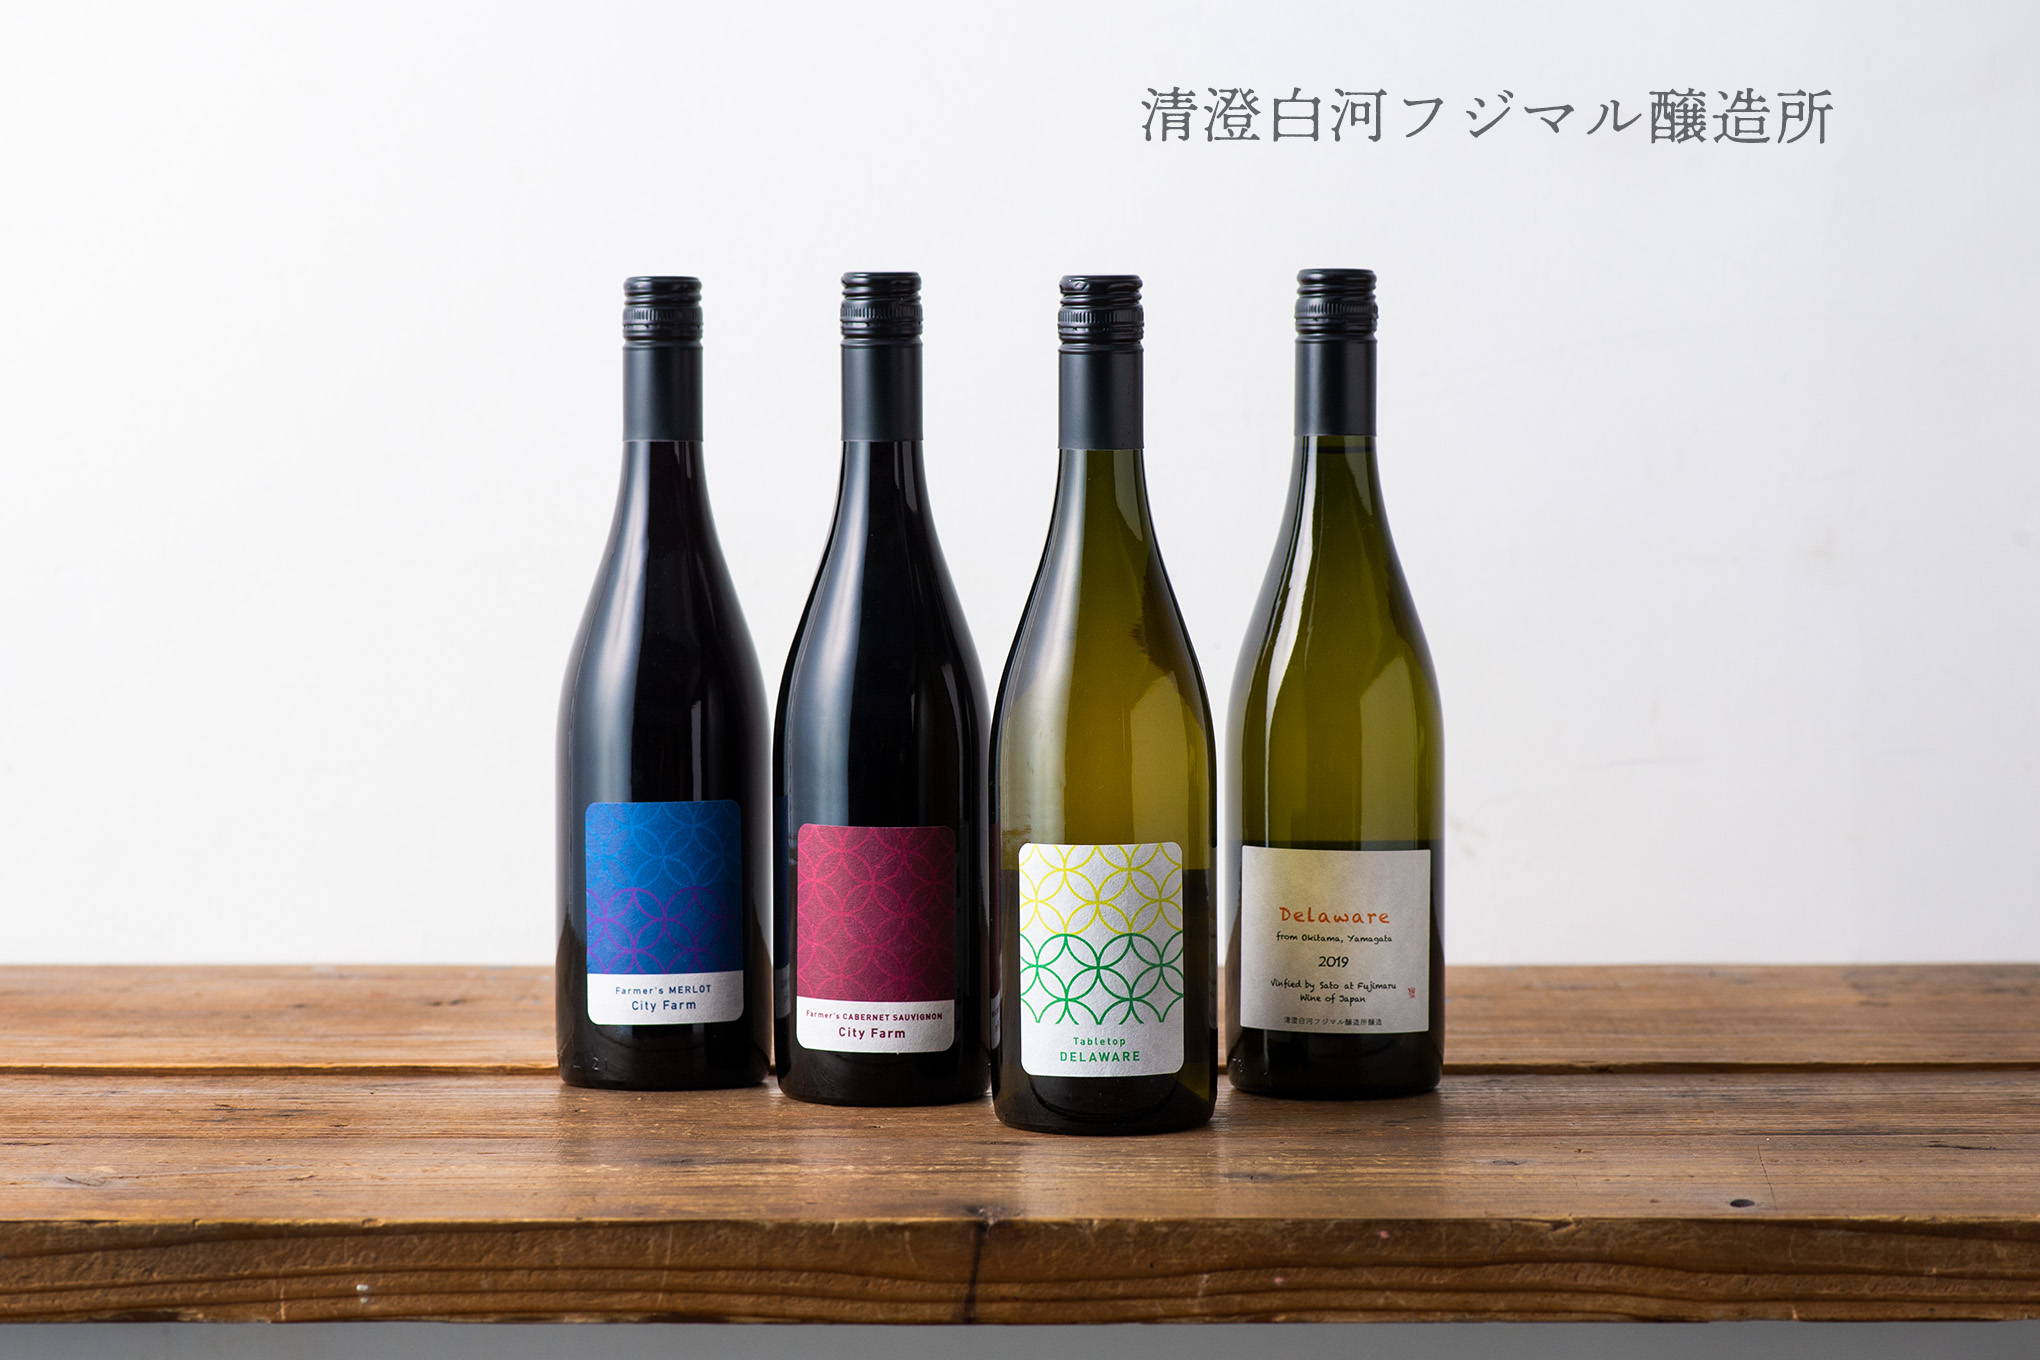 ブドウの受け入れによって農業を支援するネゴシアン型アーバンワイナリーが、大阪から東京へ。『清澄白河フジマル醸造所』。